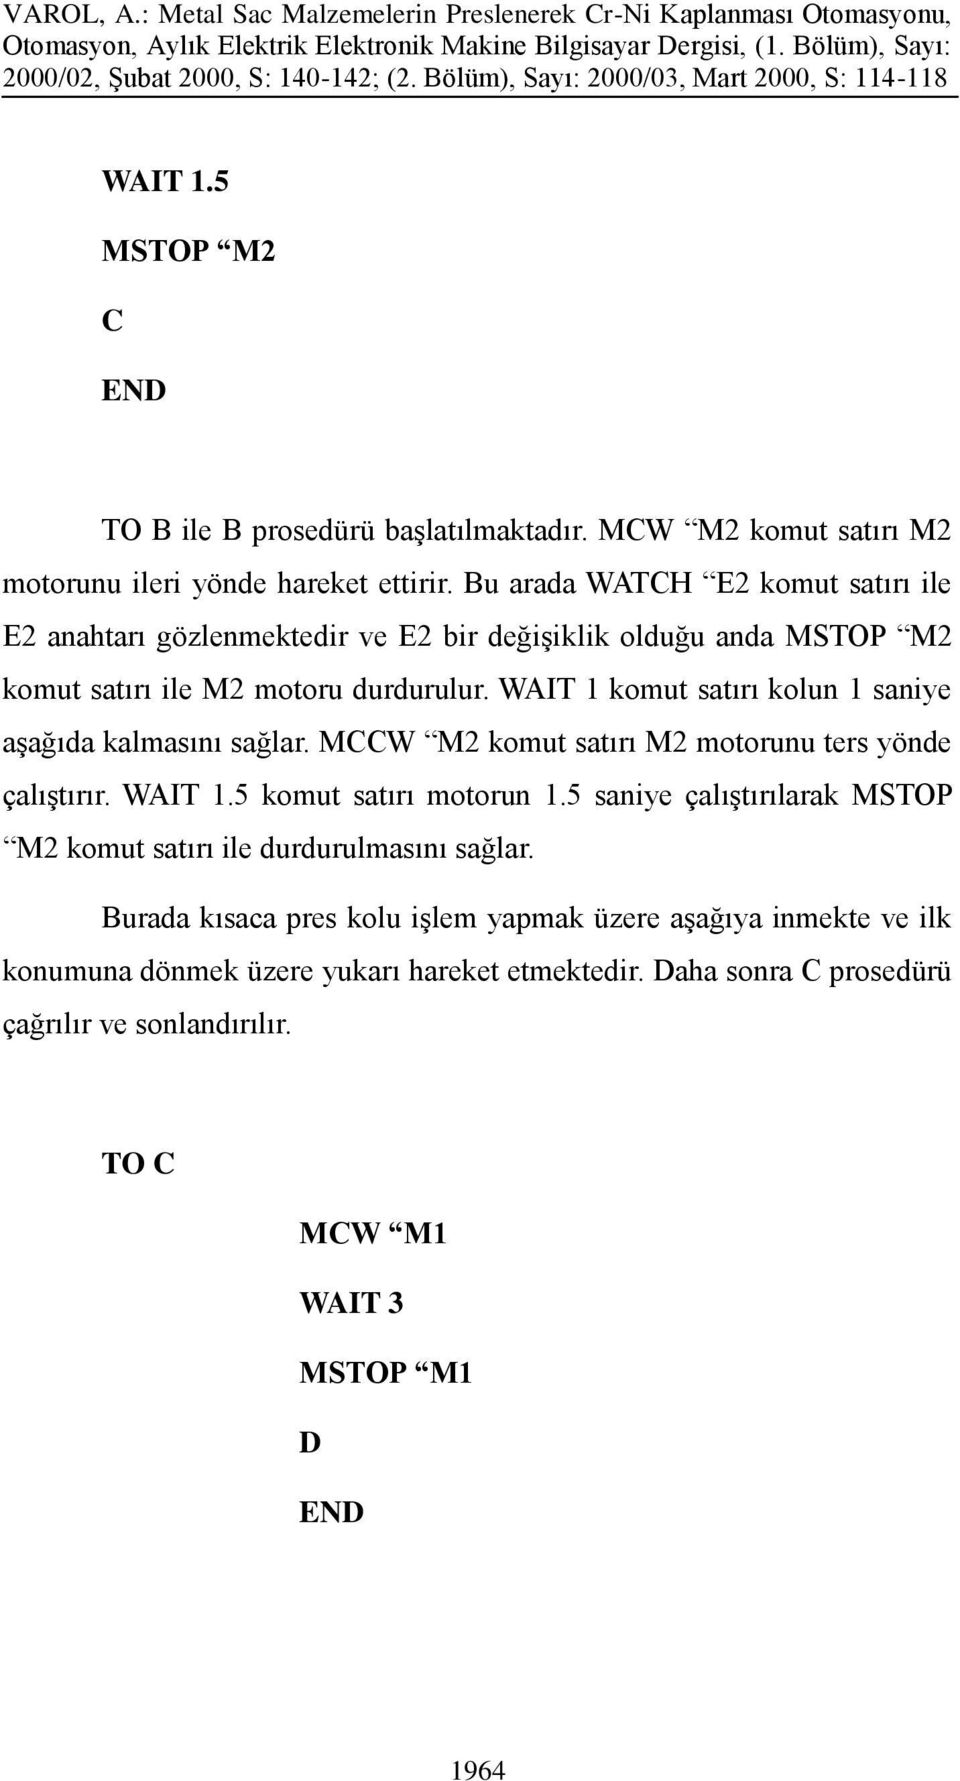 WAIT 1 komut satırı kolun 1 saniye aşağıda kalmasını sağlar. MCCW M2 komut satırı M2 motorunu ters yönde çalıştırır. WAIT 1.5 komut satırı motorun 1.